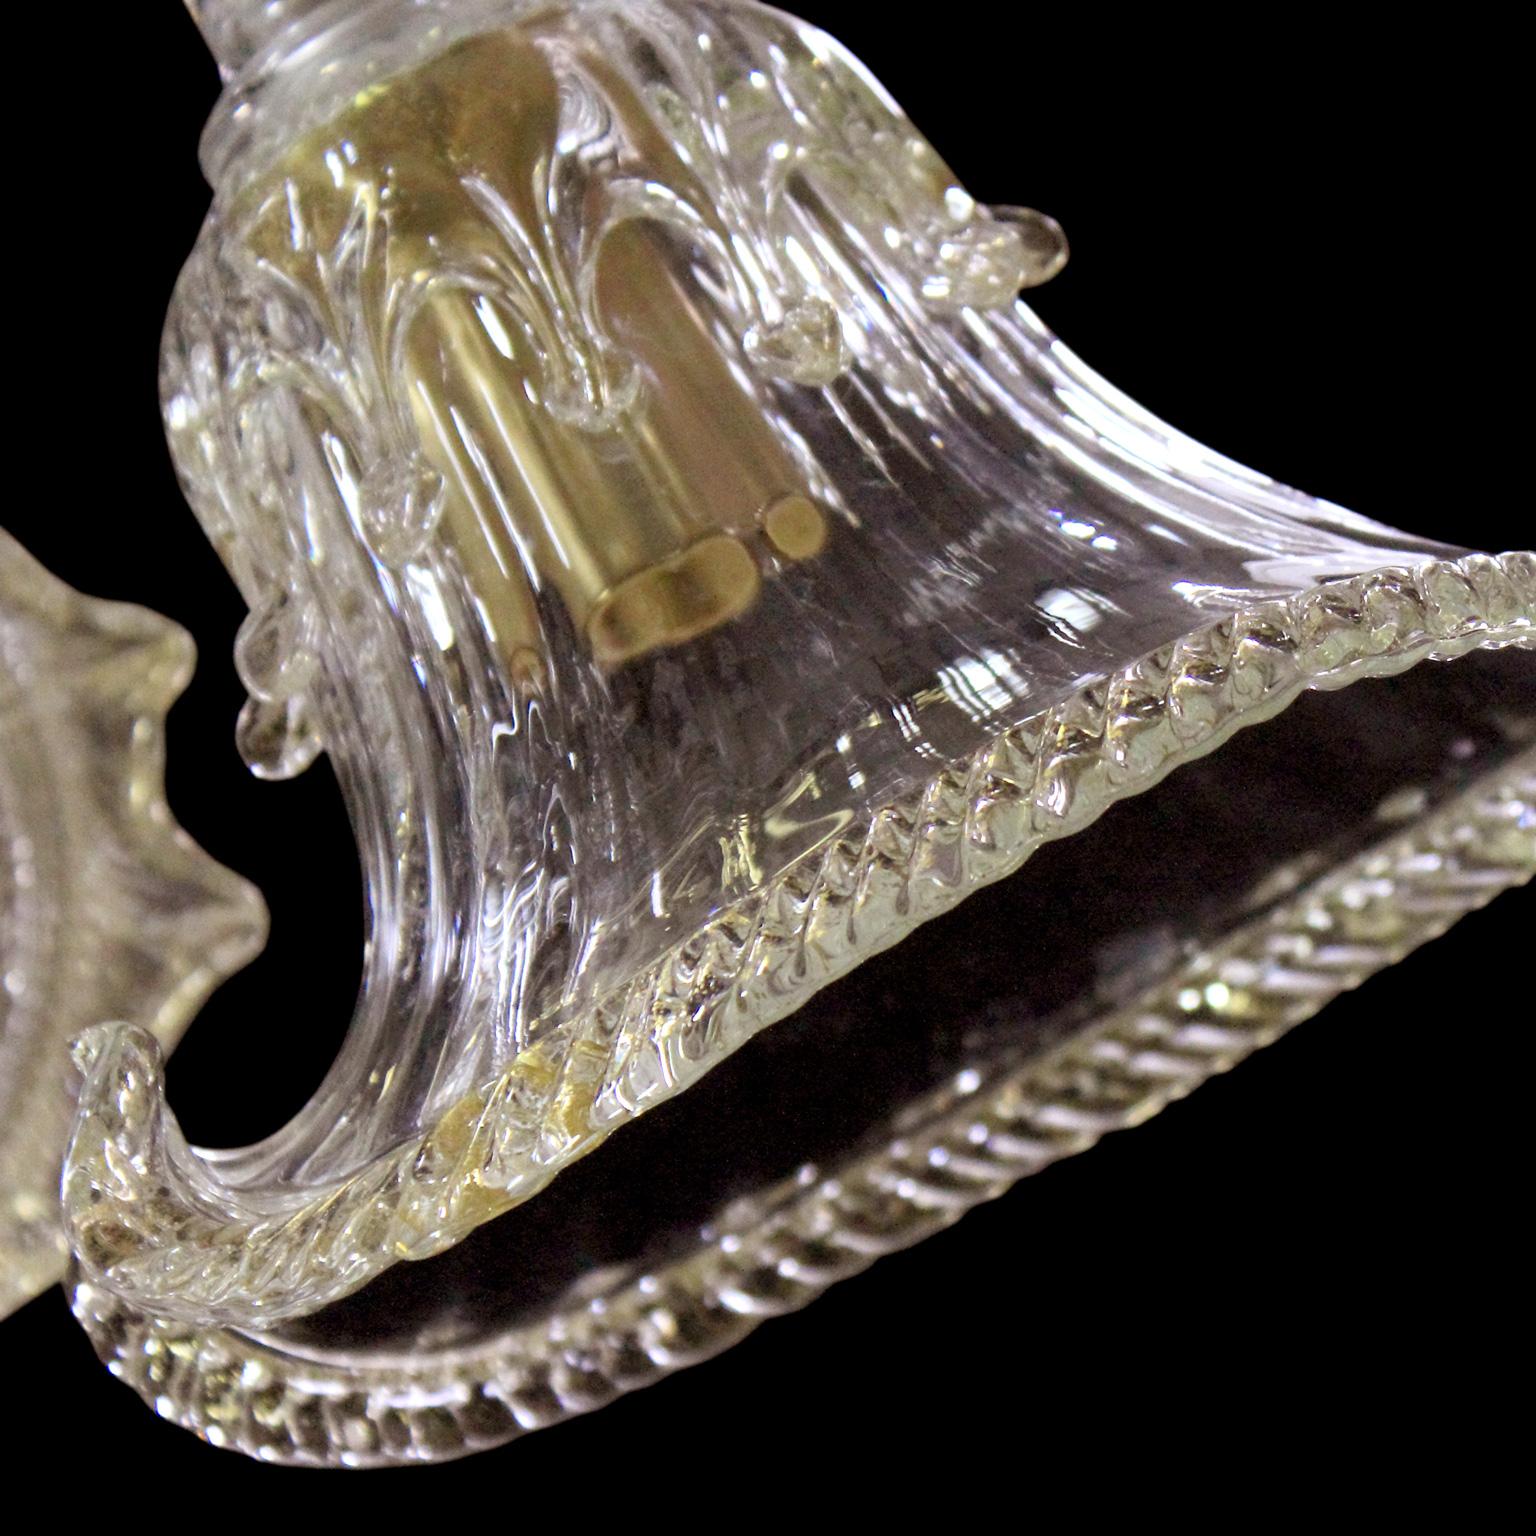 Diese venezianische Deckenleuchte mit Kristall- und Golddetails aus kunstvollem Muranoglas präsentiert ein organisches Design, das das Ergebnis einer Inspiration aus der Natur ist. Die Schalen und einige Details erinnern an den flüssigen Fluss des